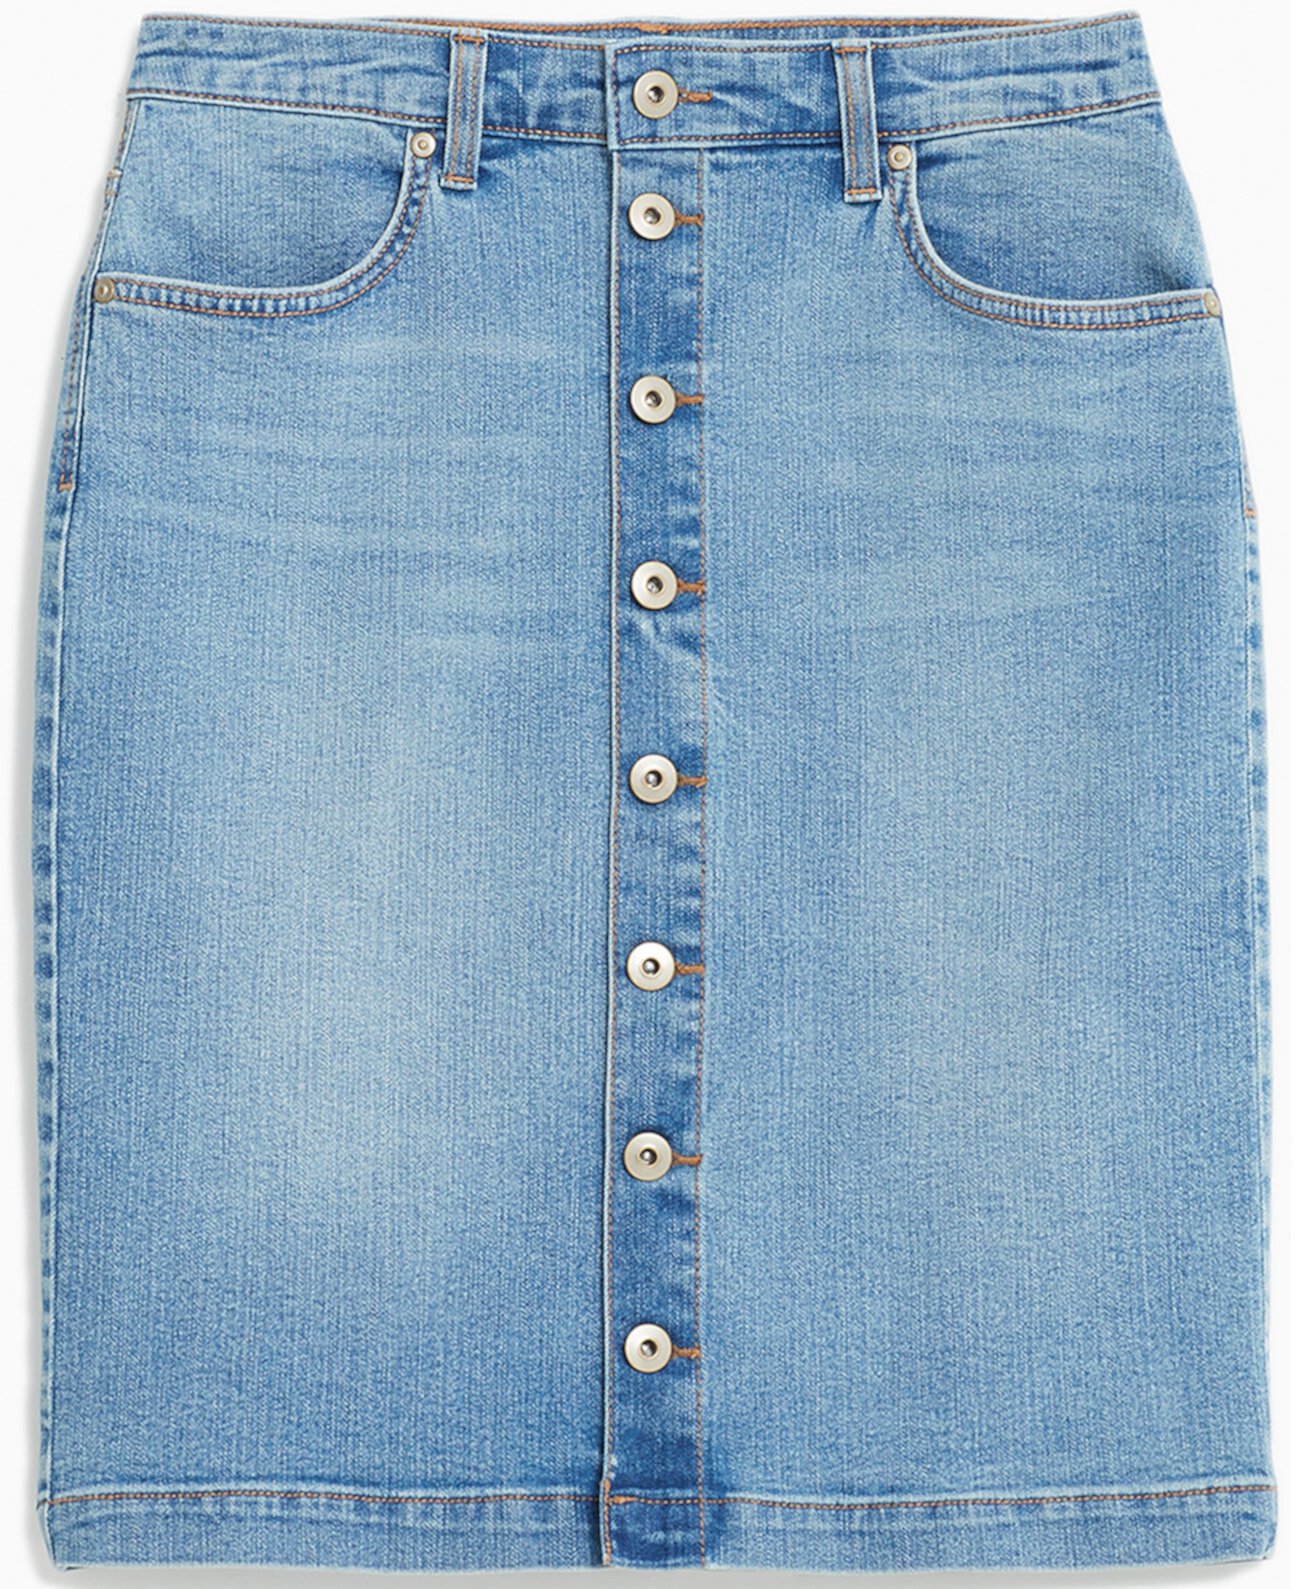 Миниатюрная джинсовая юбка с пуговицами спереди, созданная для Macy's Style & Co